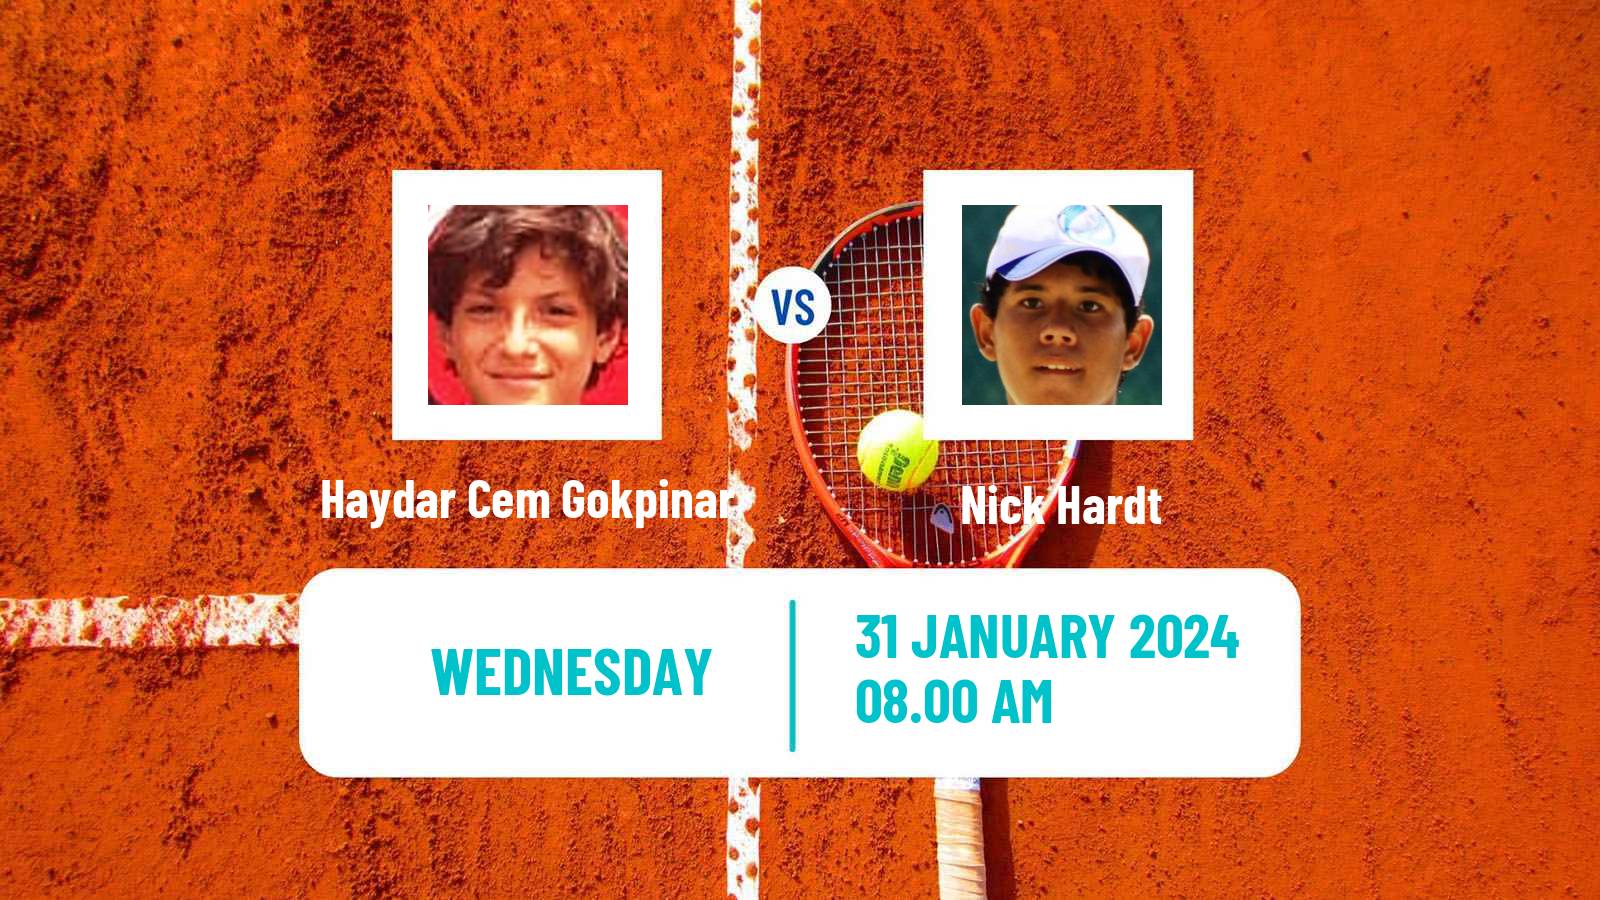 Tennis ITF M25 Antalya Men Haydar Cem Gokpinar - Nick Hardt